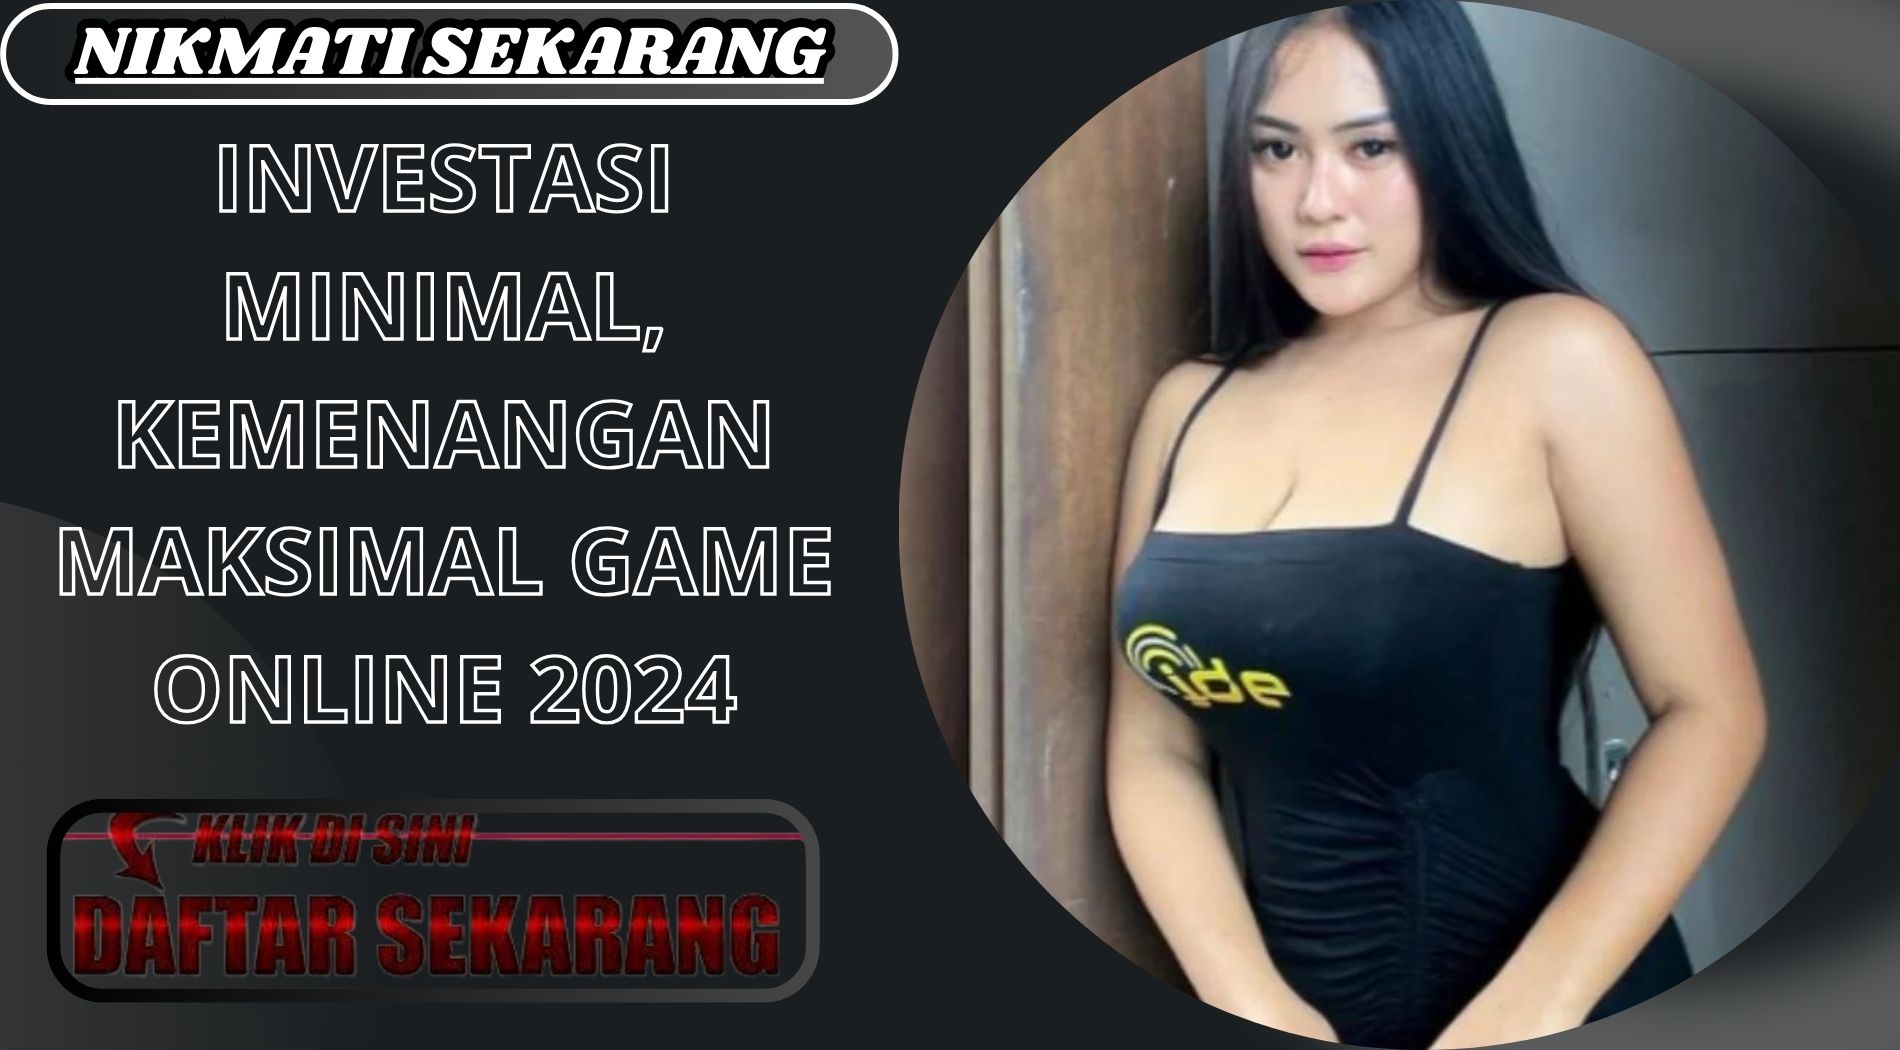 INVESTASI MINIMAL, KEMENANGAN MAKSIMAL GAME ONLINE 2024